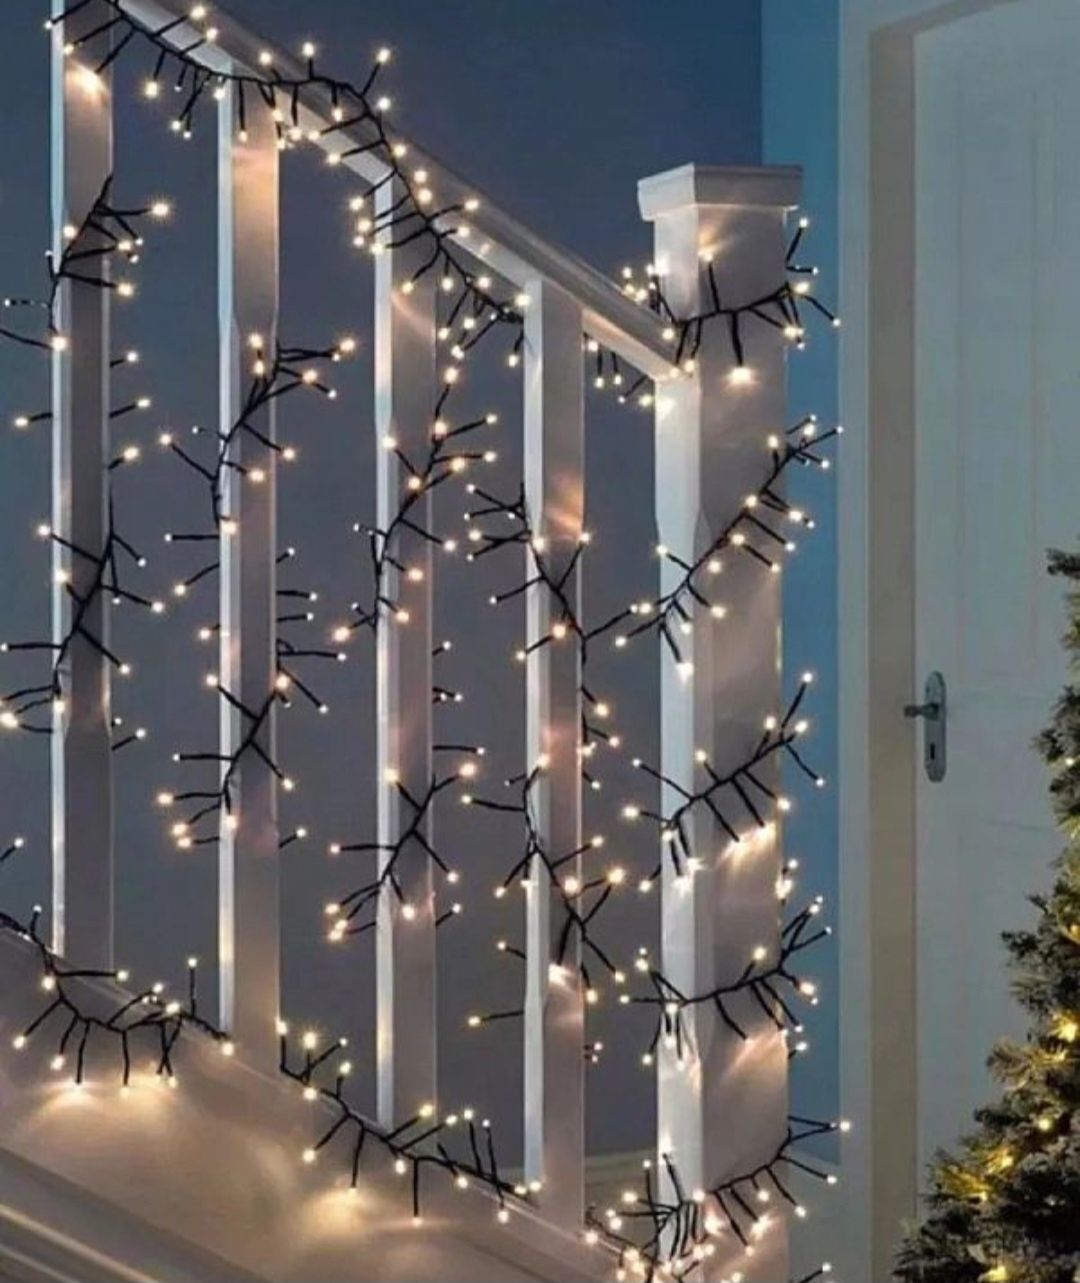 Lampki choinkowe LED 100 diod 10m bialy cieply
 
Oświetlenie świąteczn